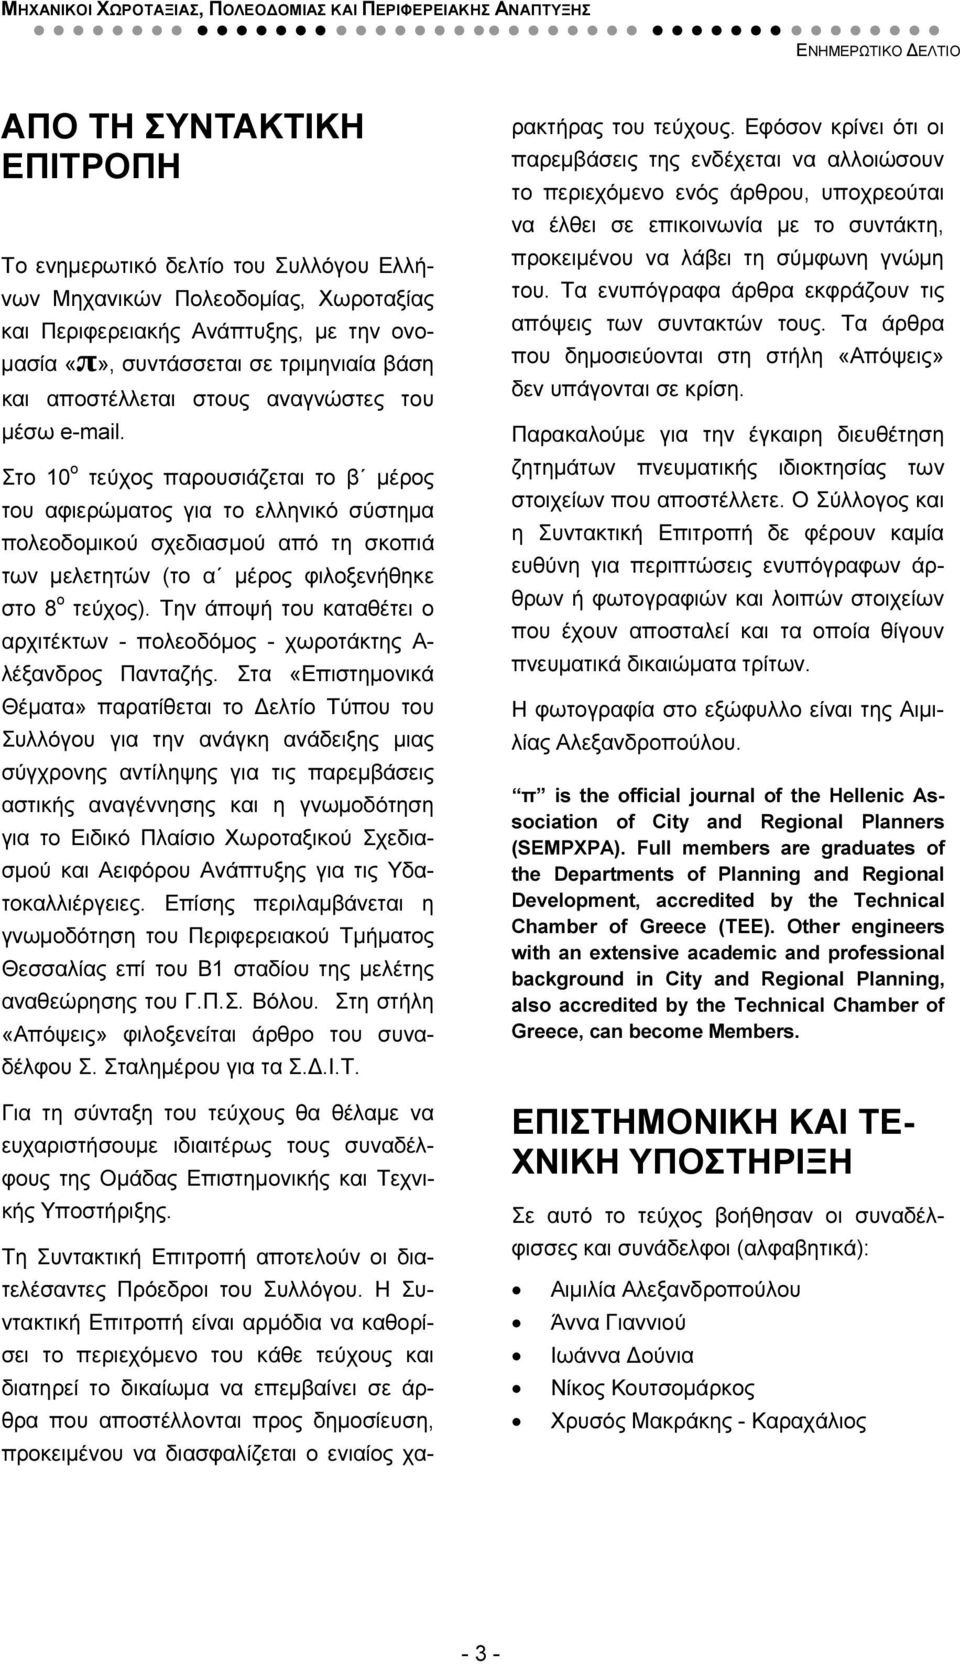 Στο 10 ο τεύχος παρουσιάζεται το β µέρος του αφιερώµατος για το ελληνικό σύστηµα πολεοδοµικού σχεδιασµού από τη σκοπιά των µελετητών (το α µέρος φιλοξενήθηκε στο 8 ο τεύχος).